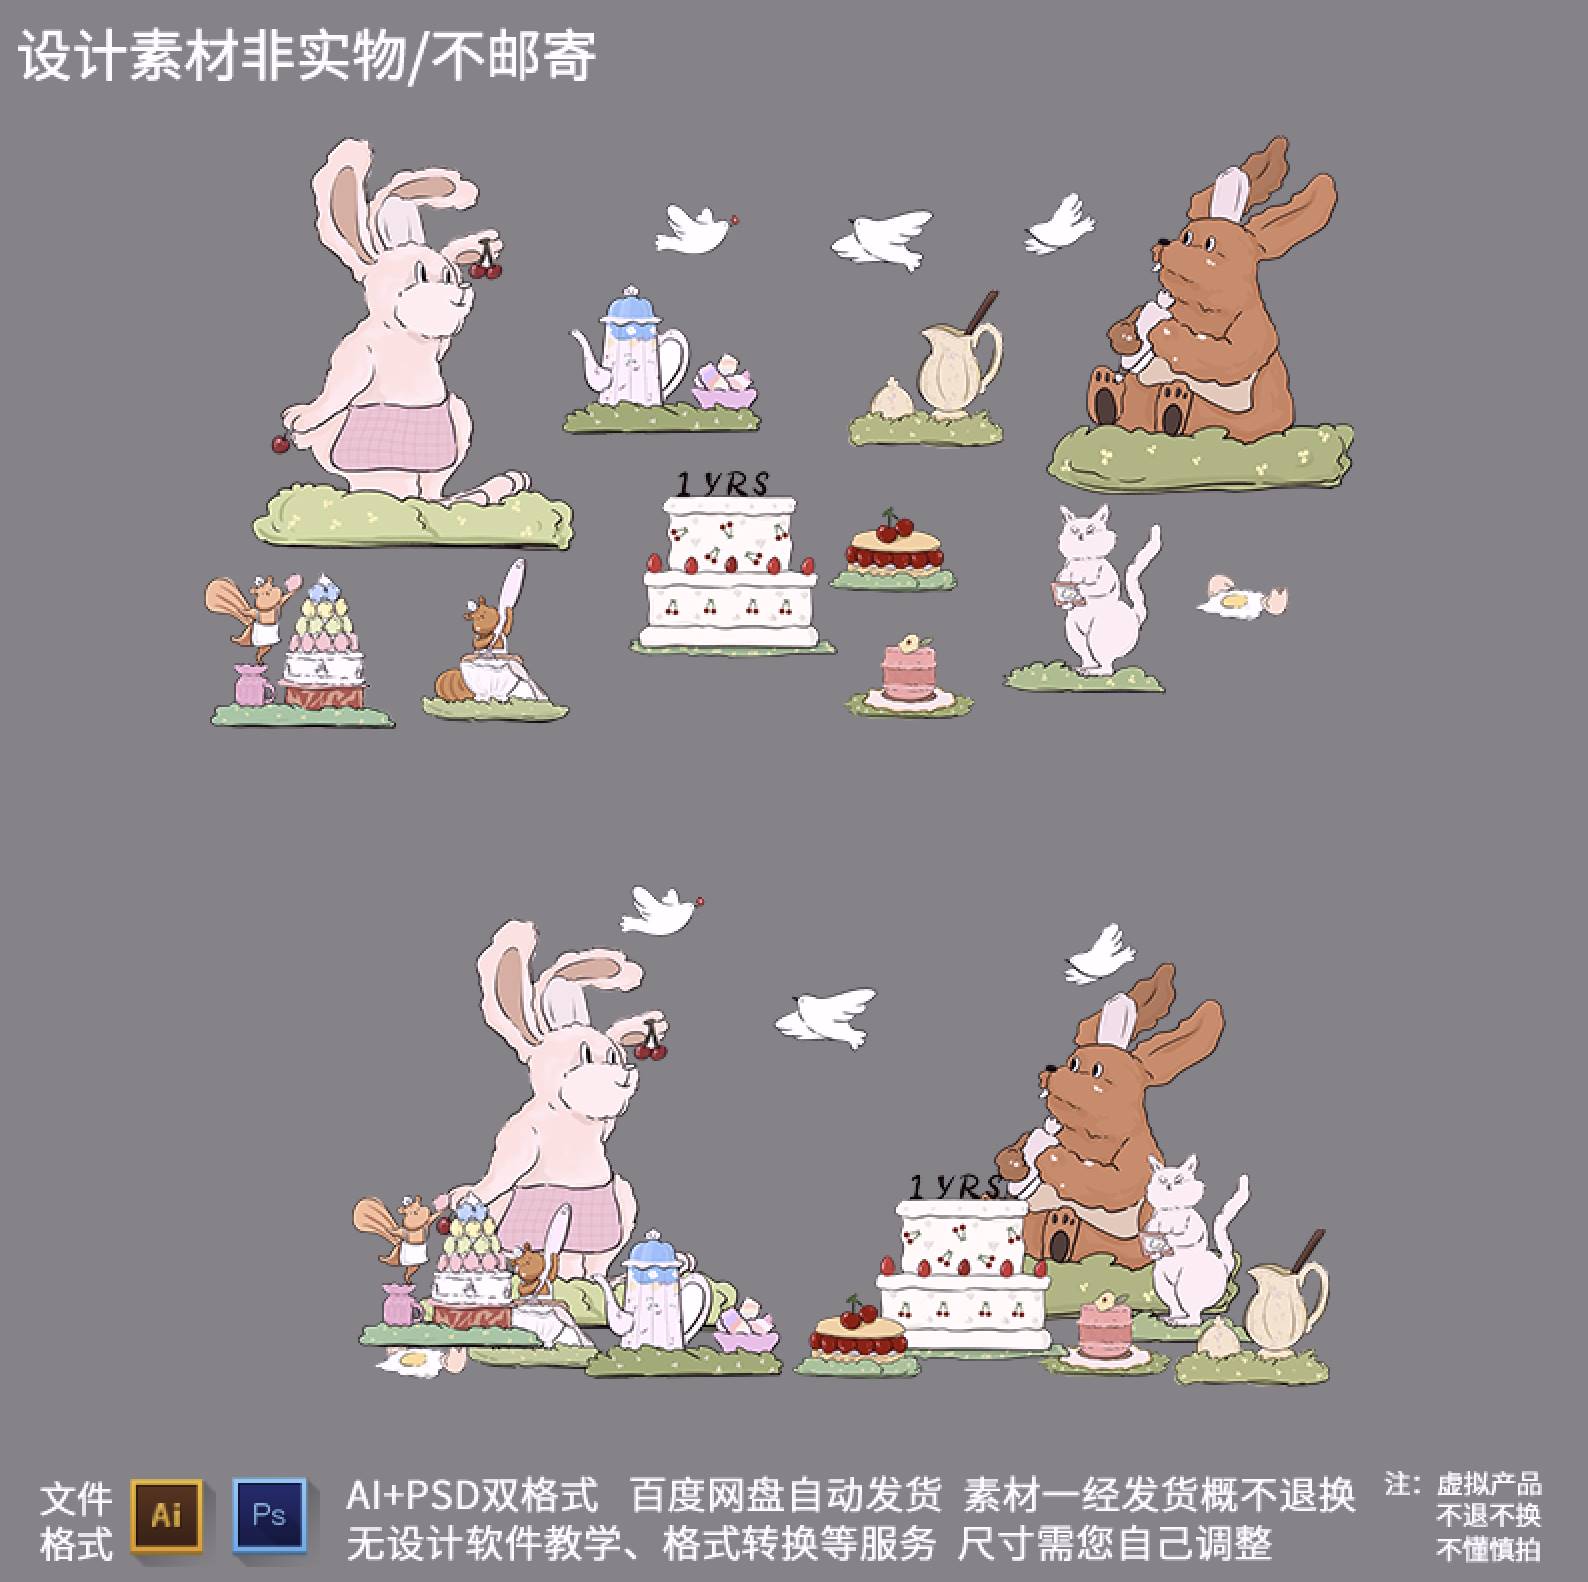 小红书烘焙蛋糕兔子点心下午茶手绘插画拍照宝宝宴KT板设计素材